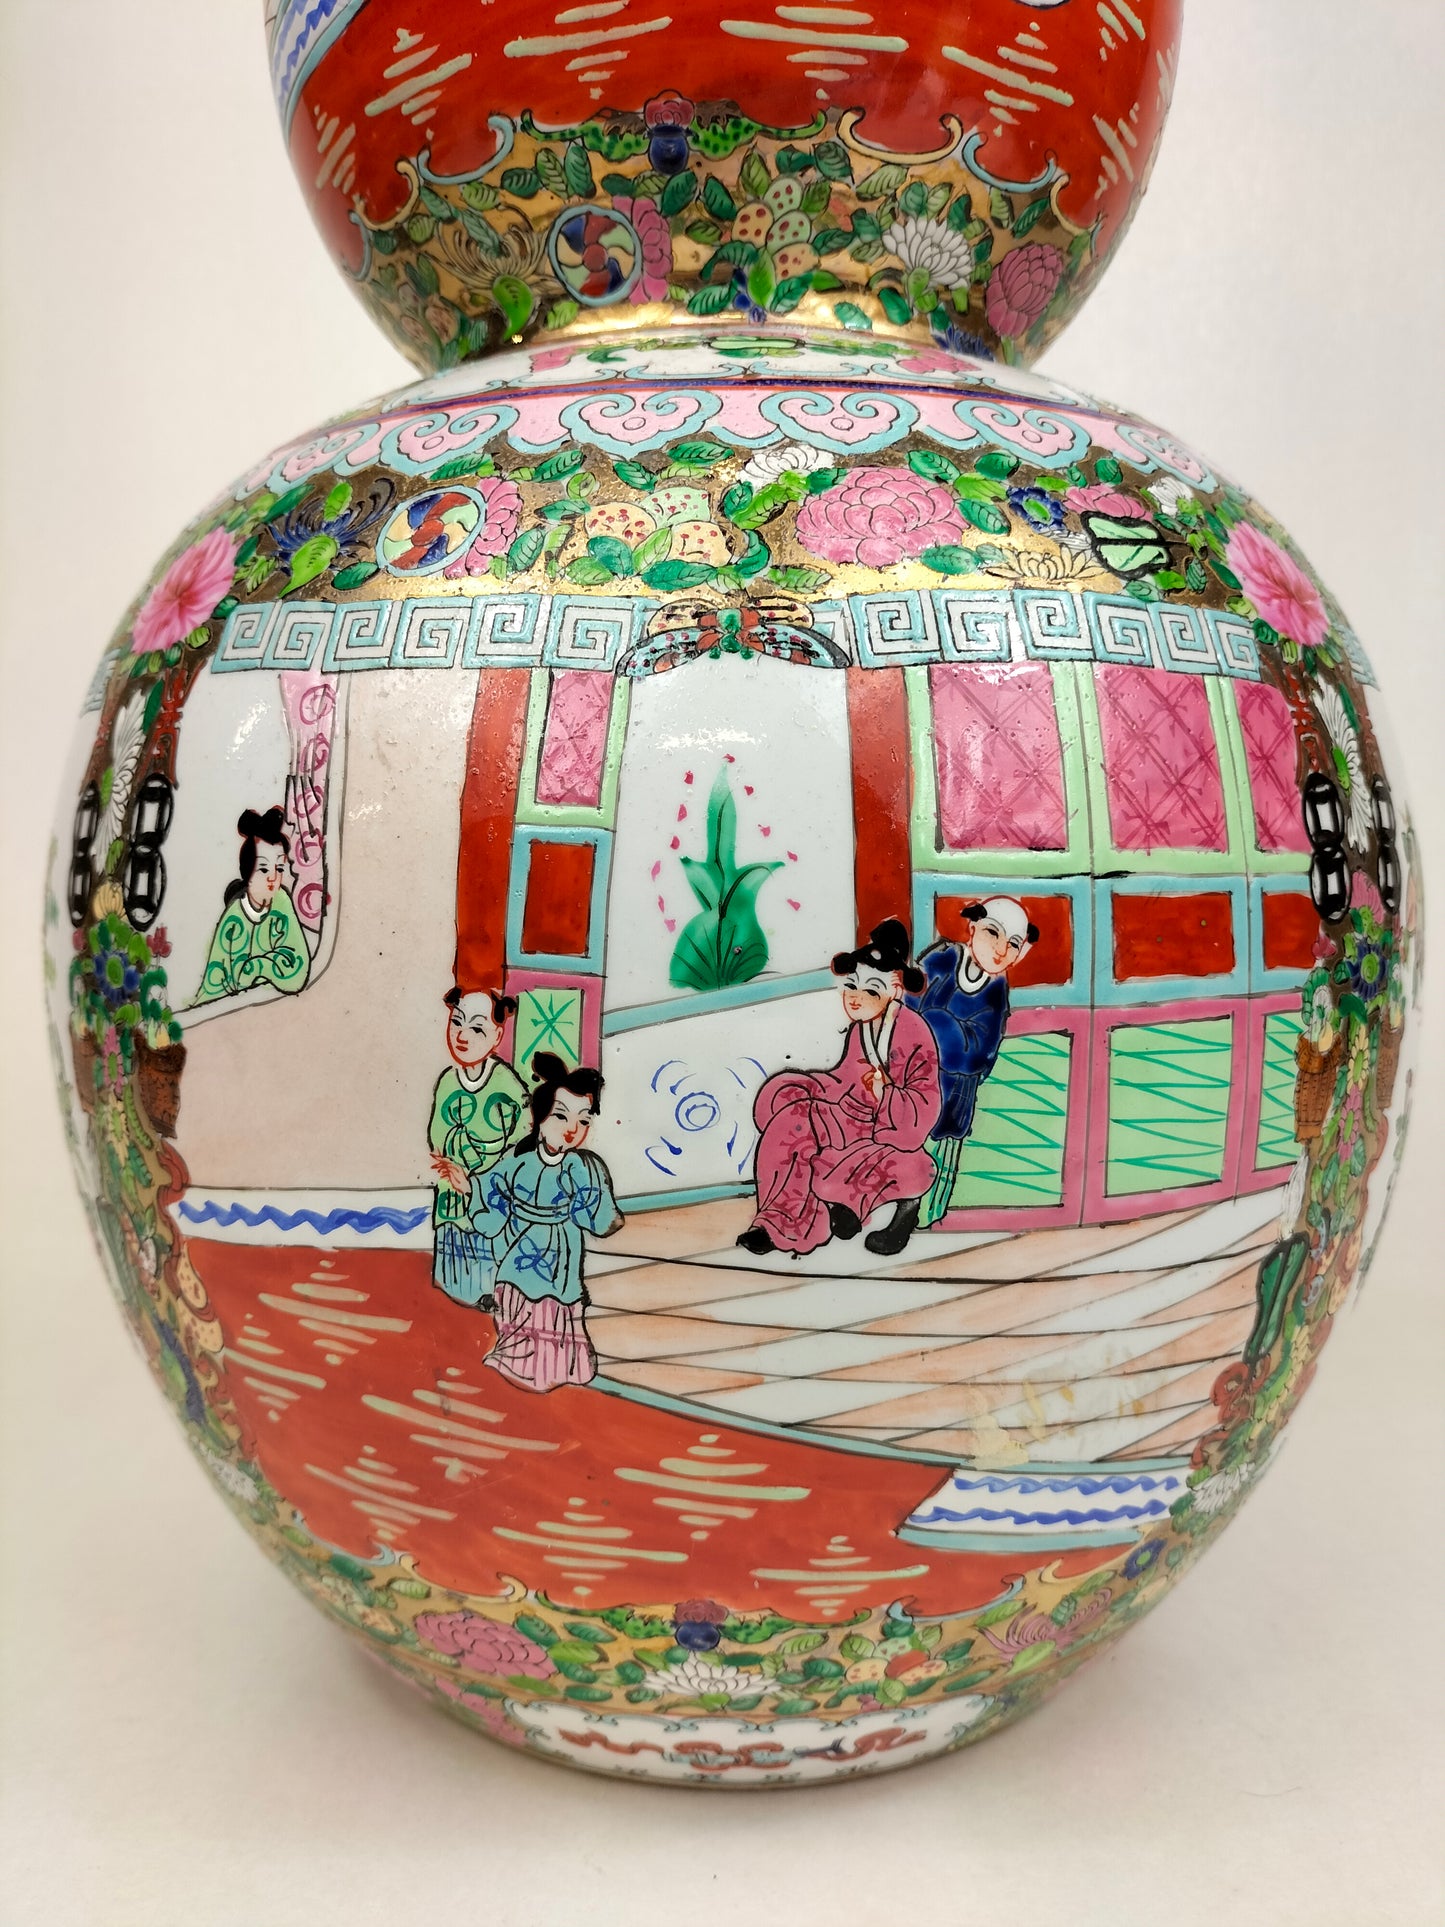 Grand vase double gourde médaillon rose canton chinois XL // 20ème siècle